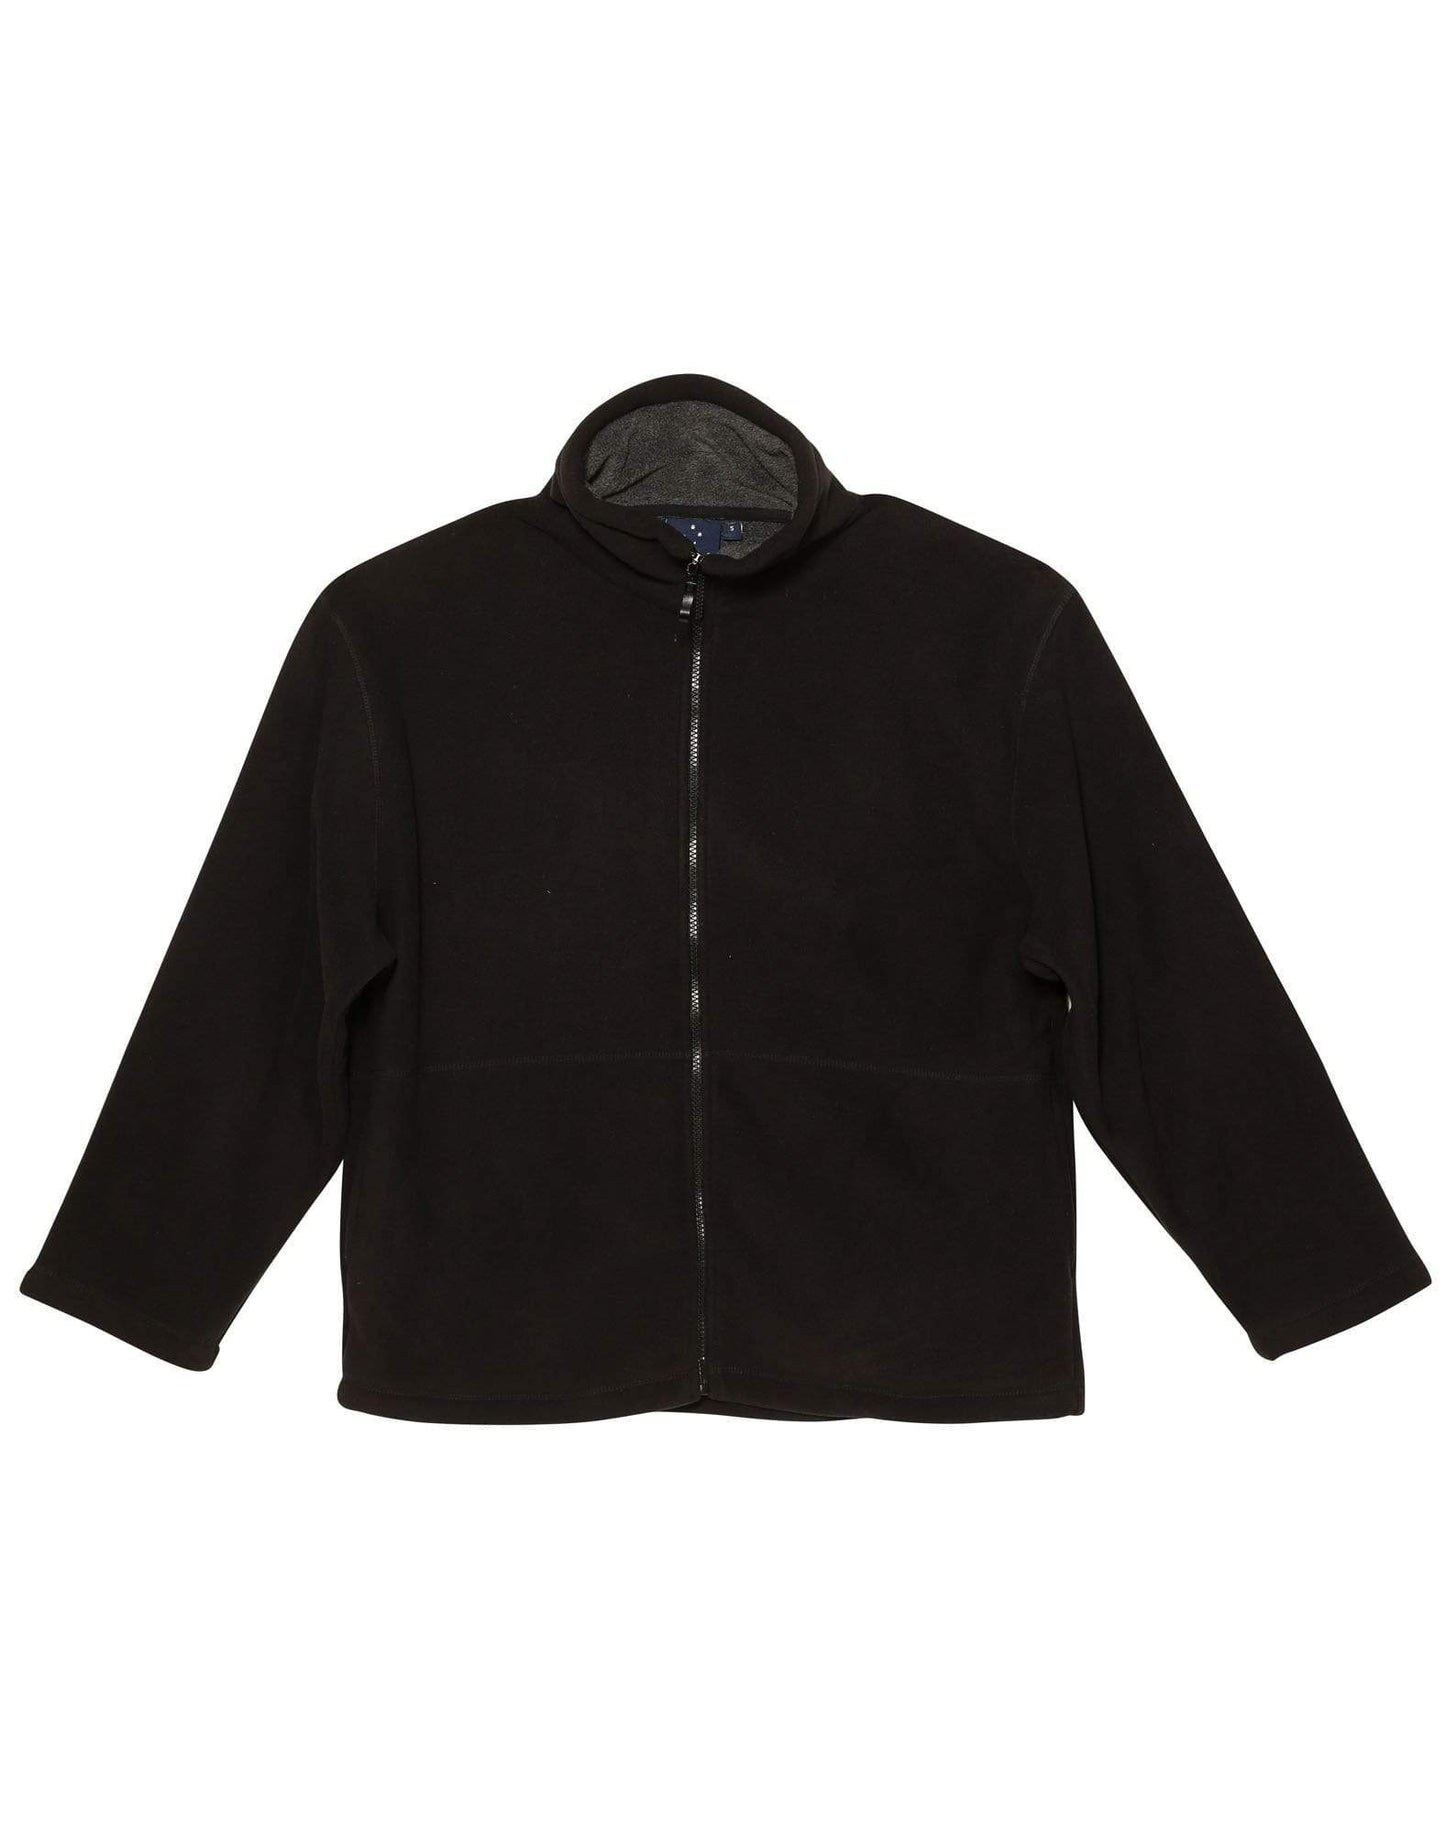 Shepherd Jacket Men's Pf15 Casual Wear Winning Spirit Black/Charcoal S 